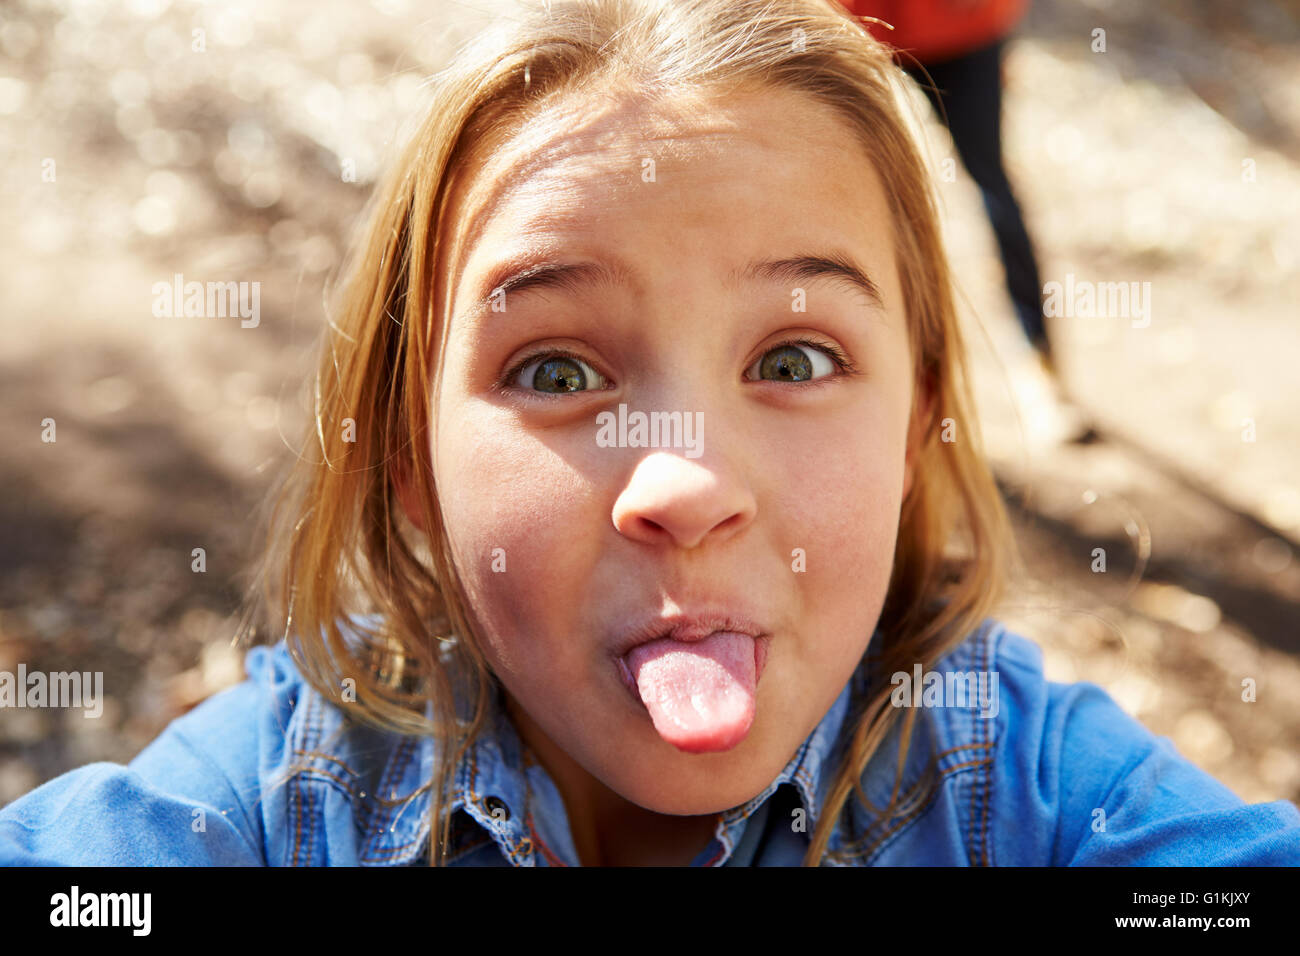 Porträt des jungen Mädchens ziehen Gesicht für Selfie Foto Stockfoto